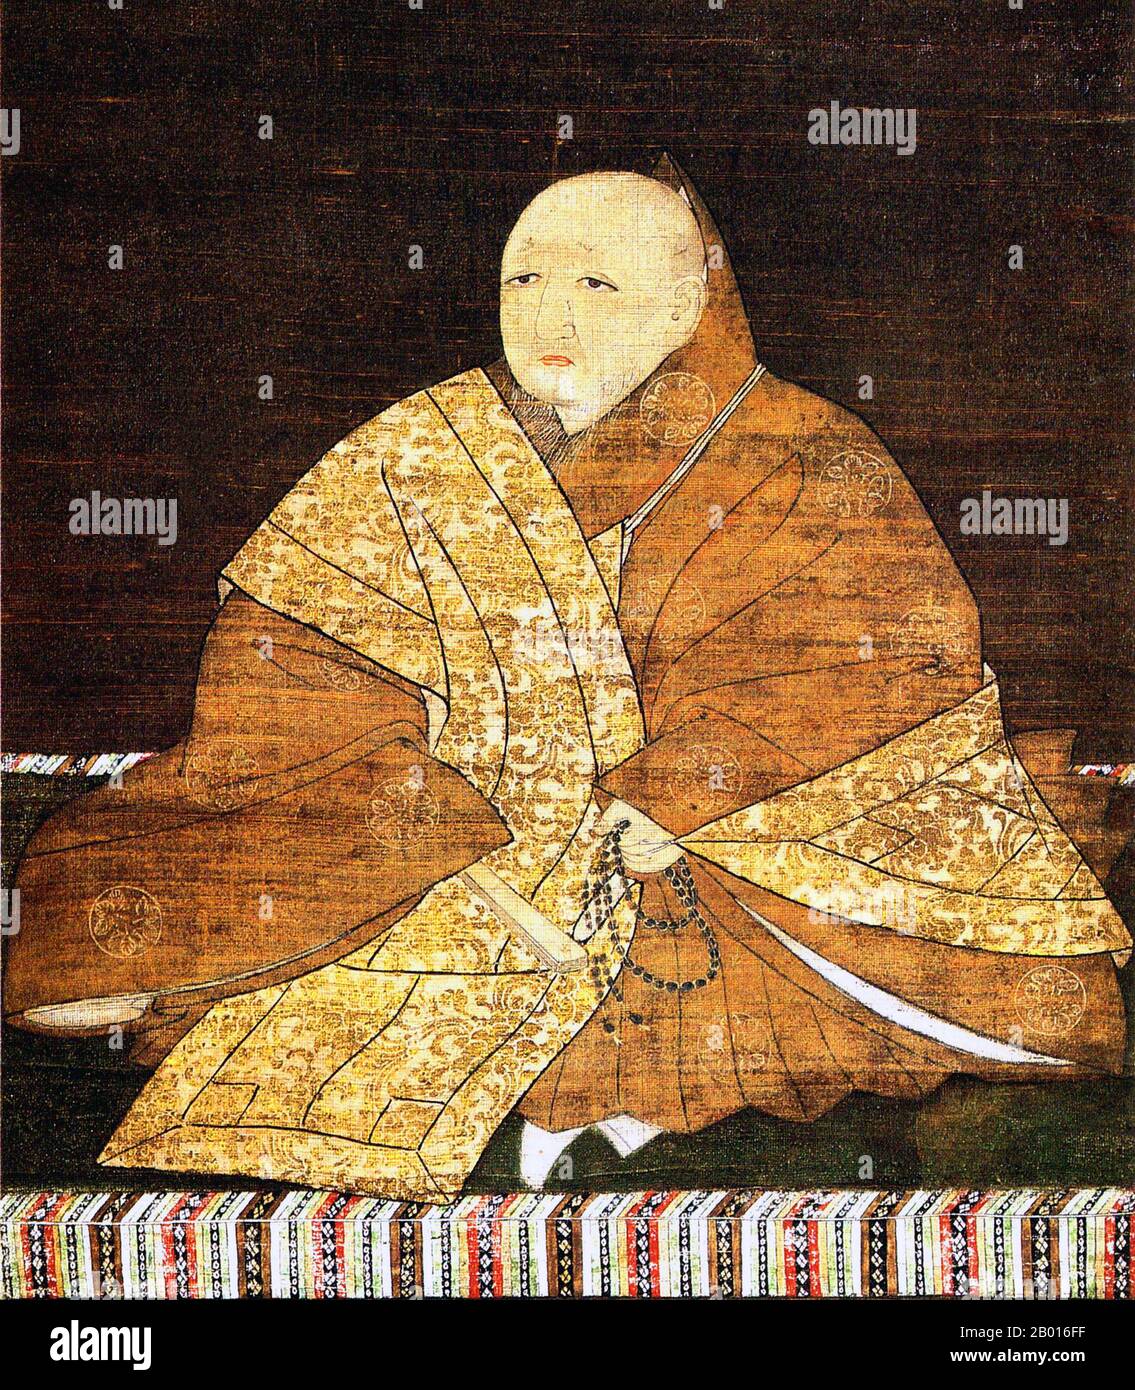 Japón: Yoshimitsu Ashikaga (25 de septiembre de 1358 - 31 de mayo de 1408), 3rd gobernante del Shogunato de Ashikaga (r. 1368-1394). Colgante de rollo de pintura, siglo 15th. Ashikaga Yoshimitsu, nacido Haruo, fue el shogun de 3rd del shogunato de Ashikaga, y el tercer hijo del segundo shogun Ashikaga Yoshiakira. Se convirtió en shogun a la edad de diez años. Fue la primera persona de la clase samurai en albergar a un emperador reinante en su propiedad privada en 1381. En 1392, terminó con el cisma imperial Nanboku-cho que había plagado la política durante más de medio siglo, y se retiró del cargo público en 1395 para convertirse en monje. Foto de stock